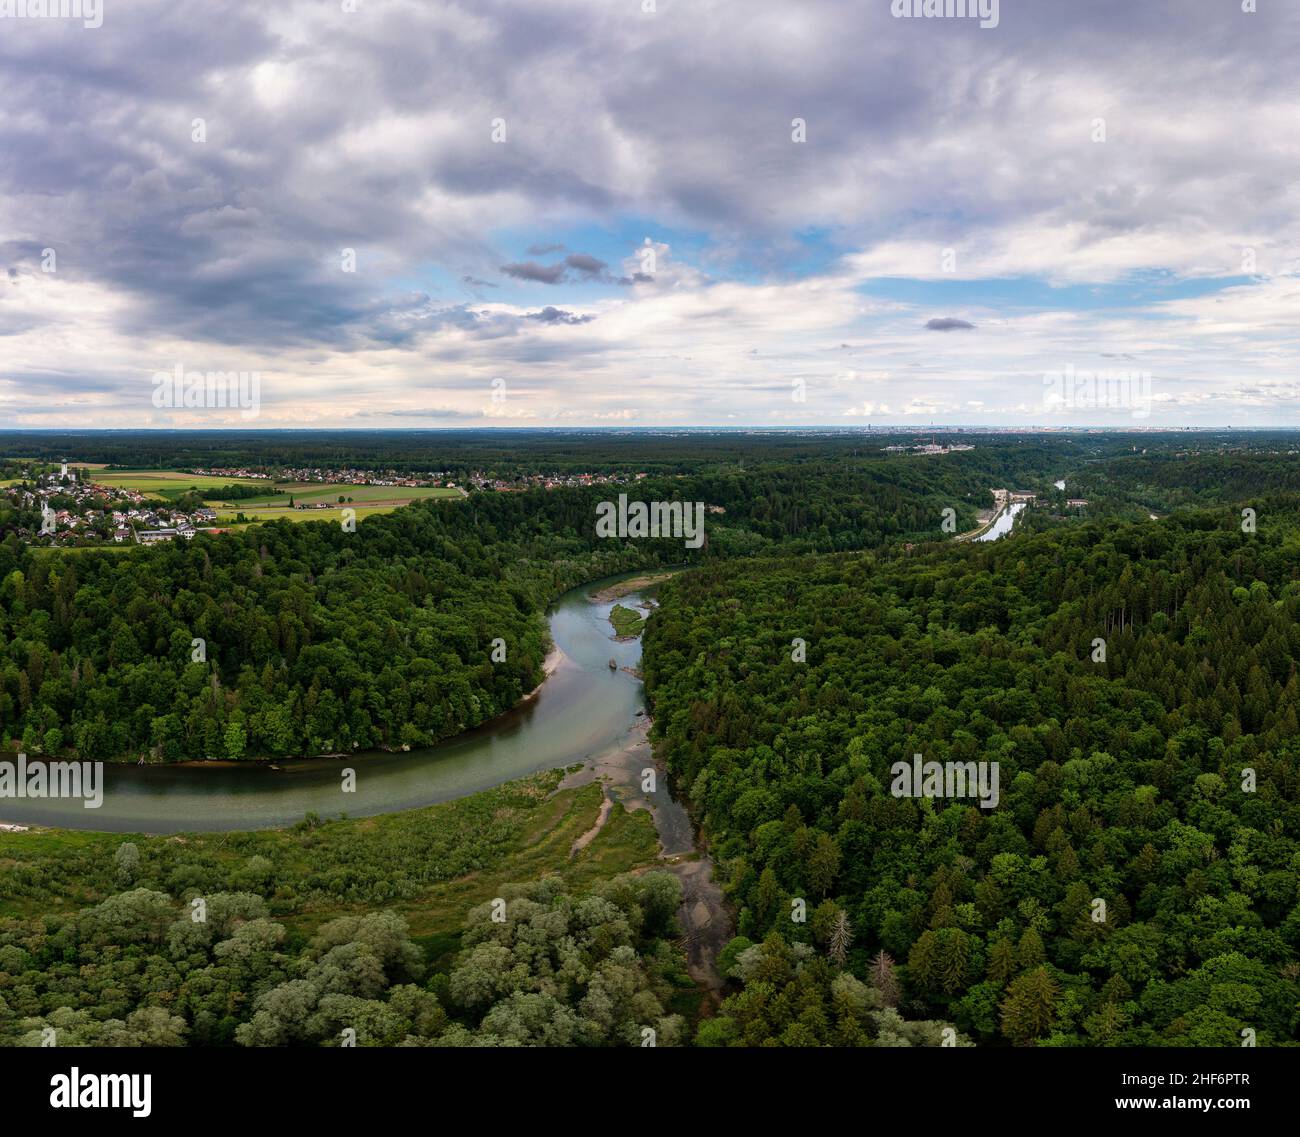 Rivière tordue entourée de tees vert vif, nature sauvage, un concept pour un environnement frais et pur dans un endroit idyllique capturé par un drone Banque D'Images